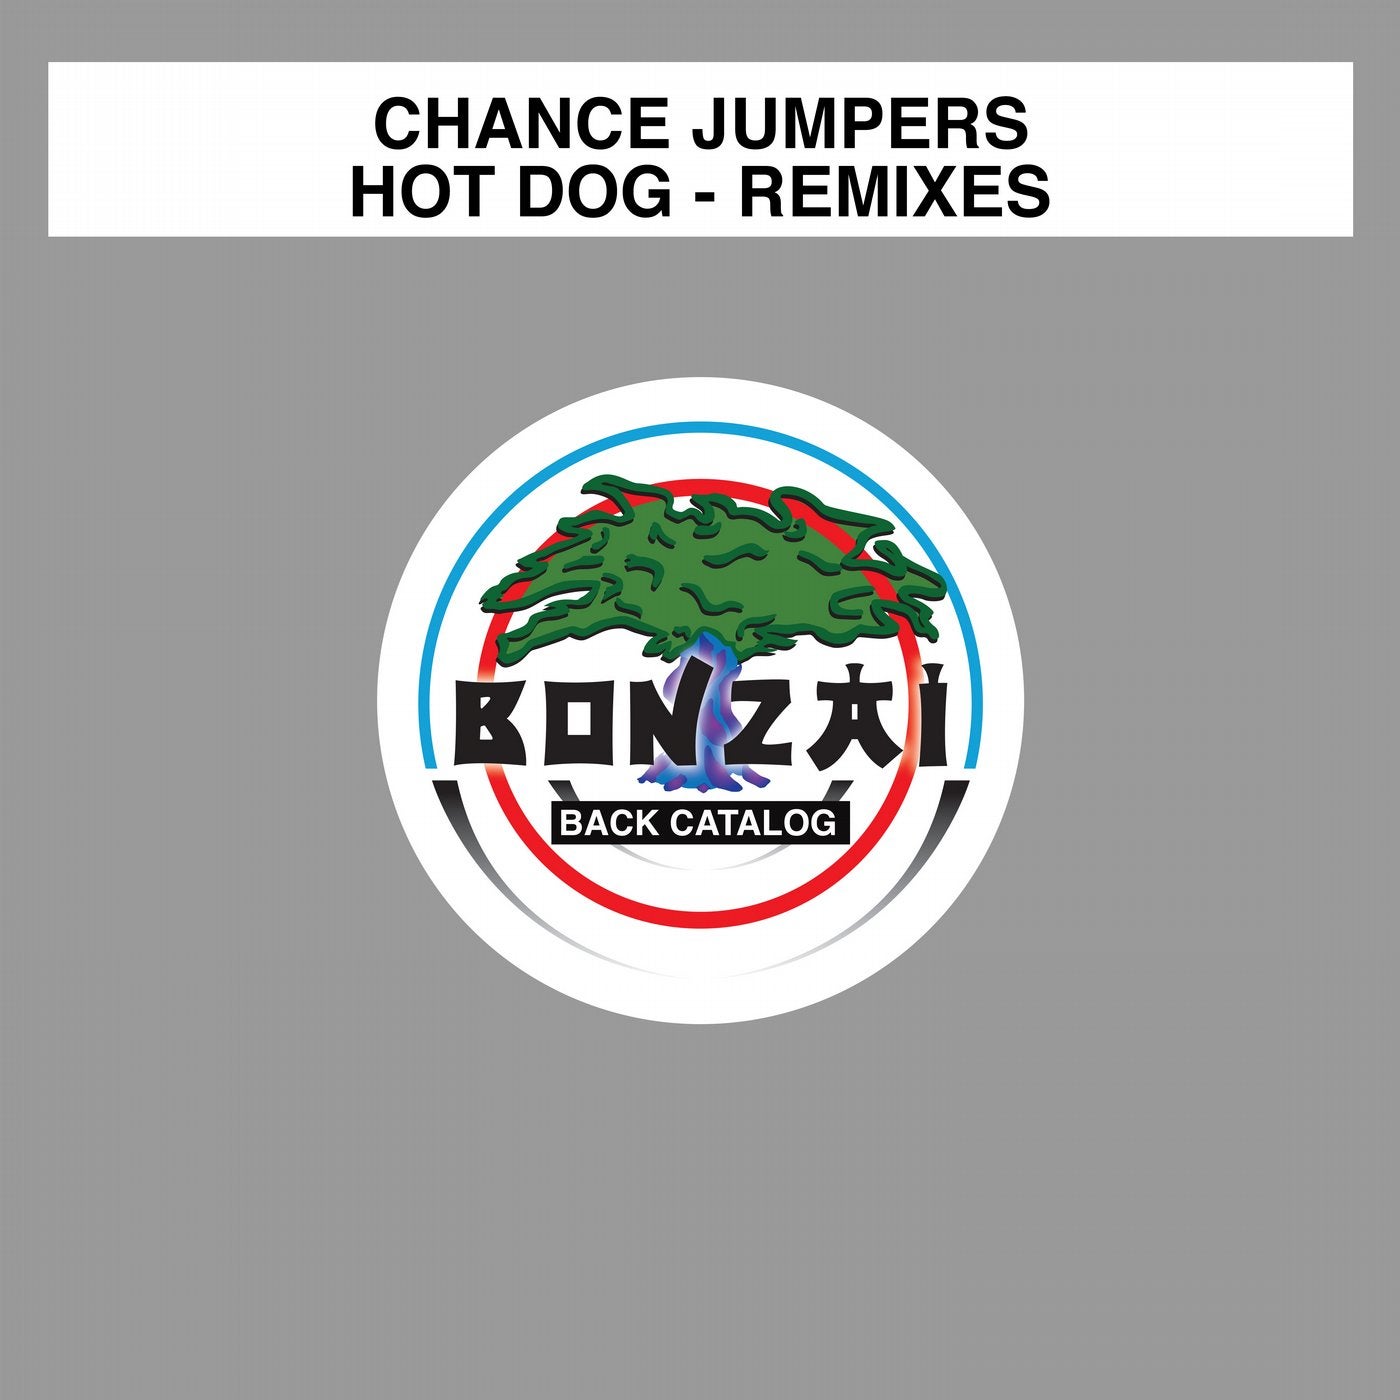 Hot Dog - Remixes